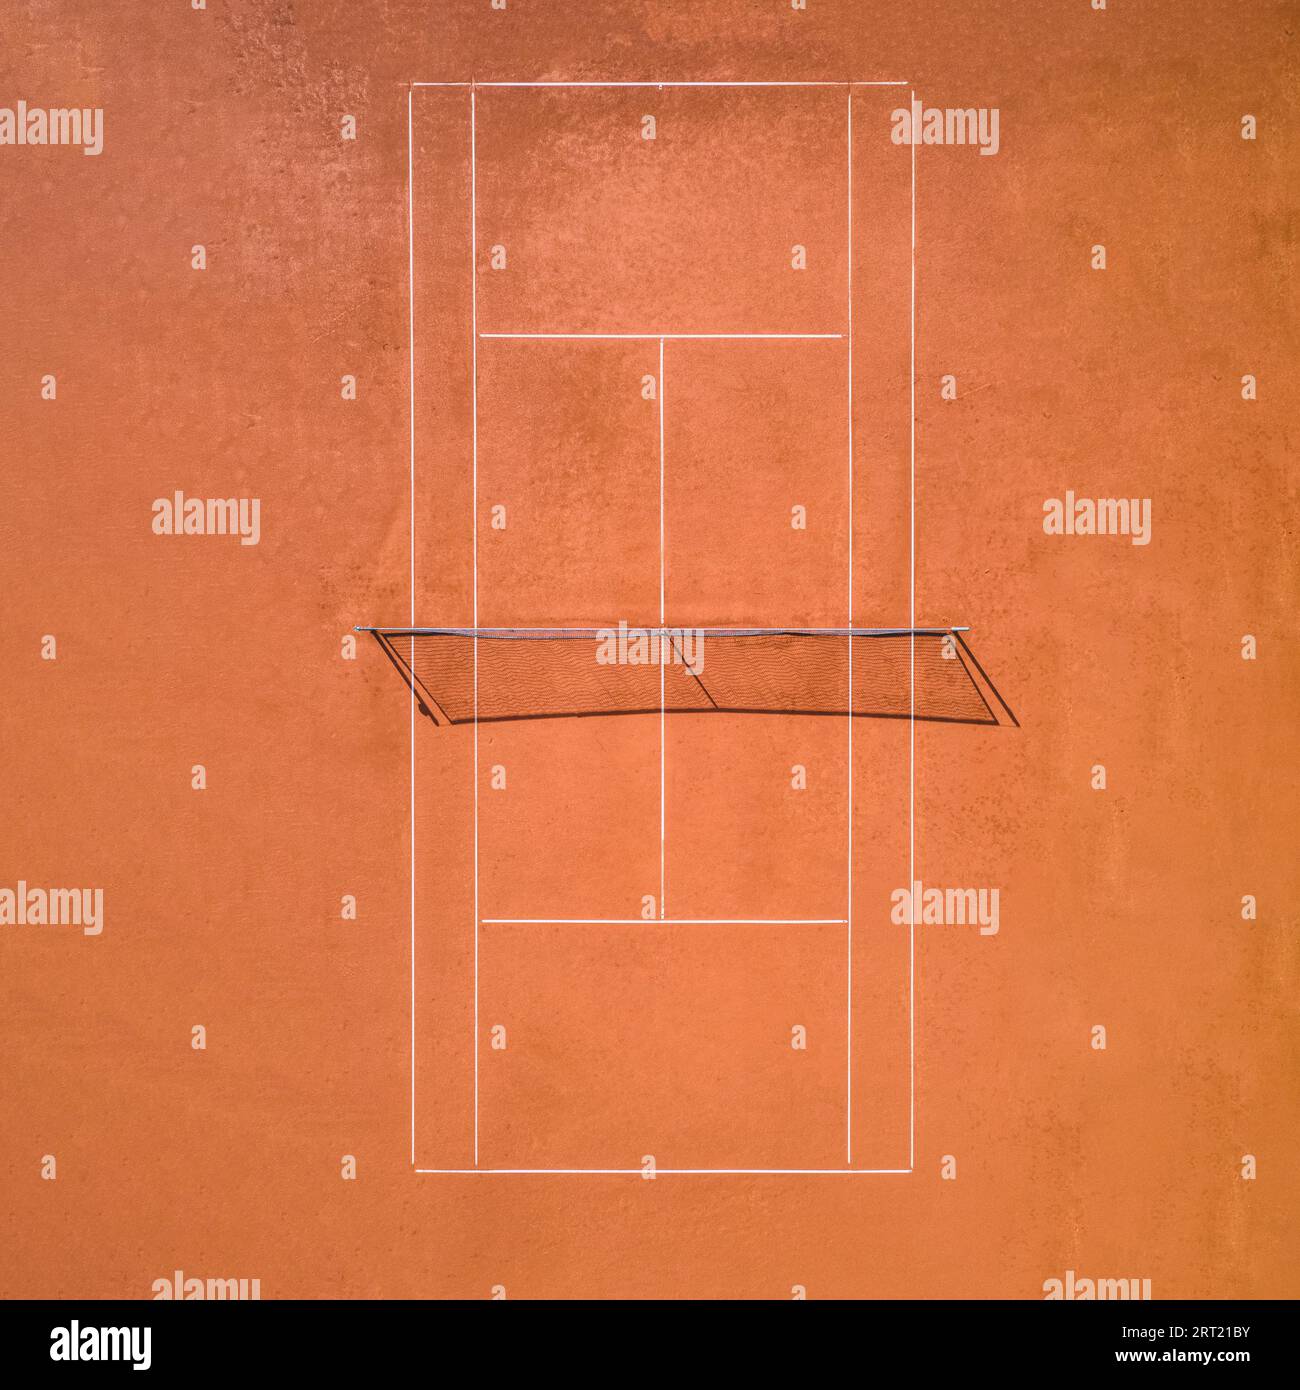 Vista aerea di un singolo campo da tennis in argilla rossa senza giocatori Foto Stock